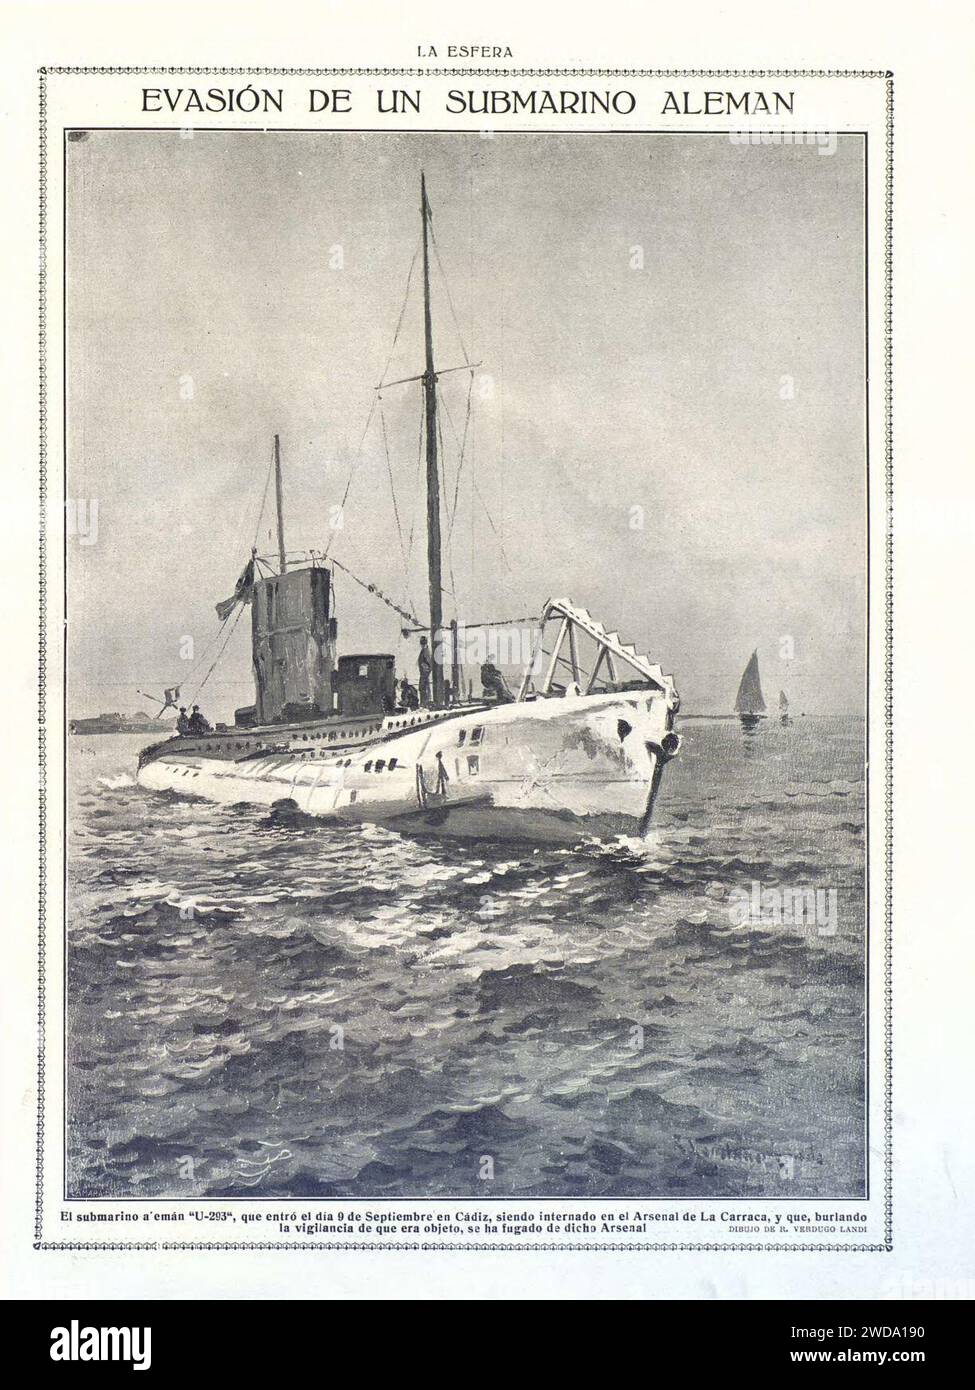 1917-10-13, La Esfera, Evasión de un submarino alemán. Stock Photo